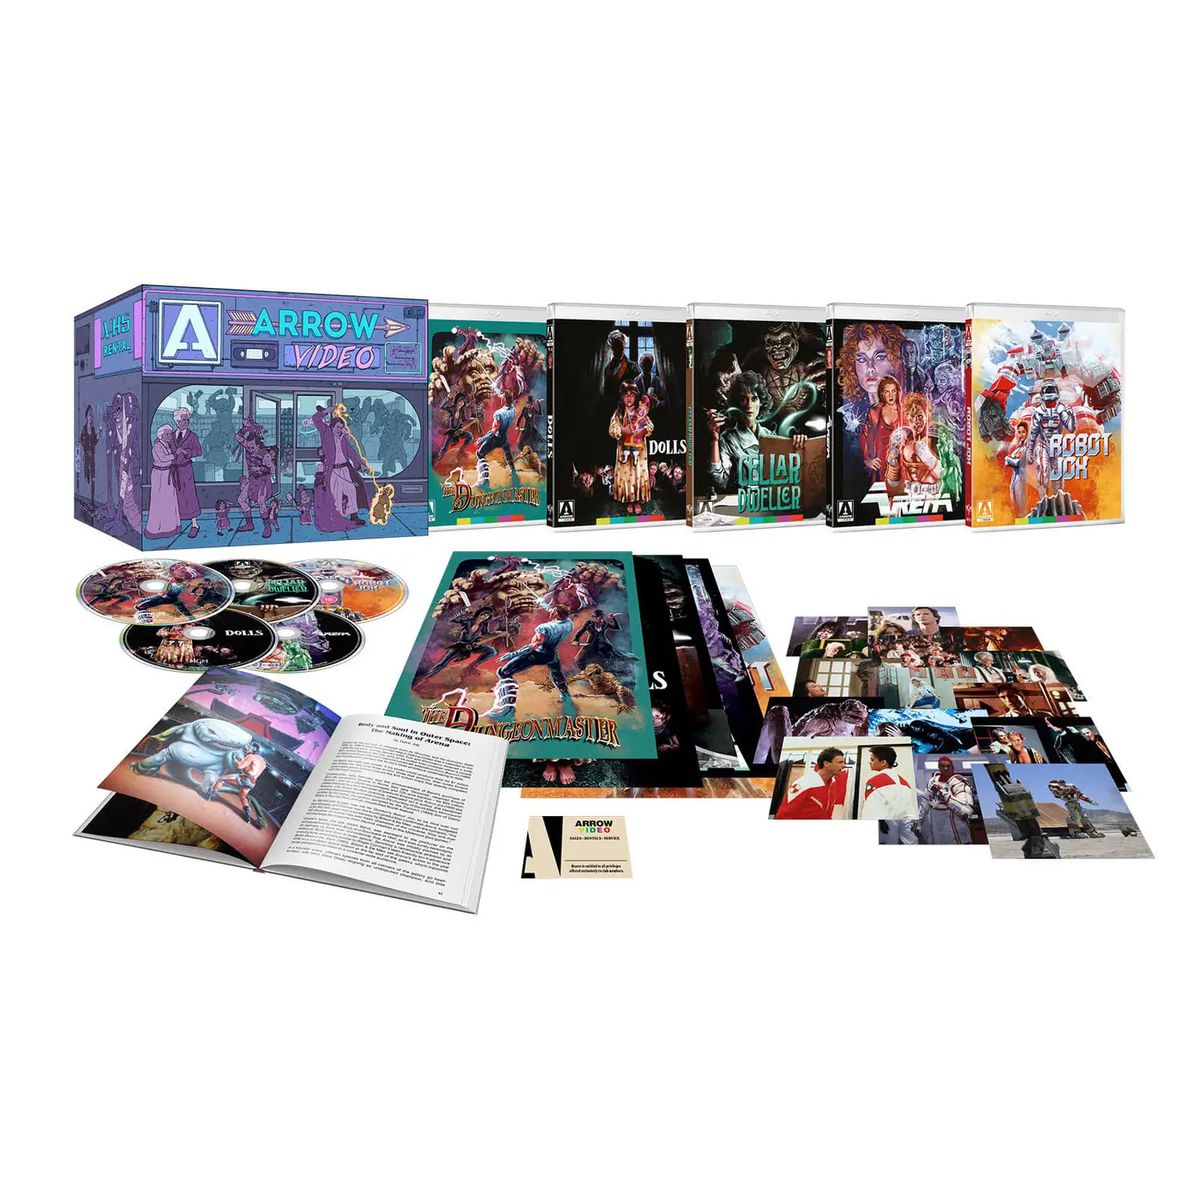 صورة لمجموعة مربعات Blu-ray الخاصة بـ Enter the Video Store ، بما في ذلك مجموعة من أقراص Blu-ray ، والصور ، وكتاب.